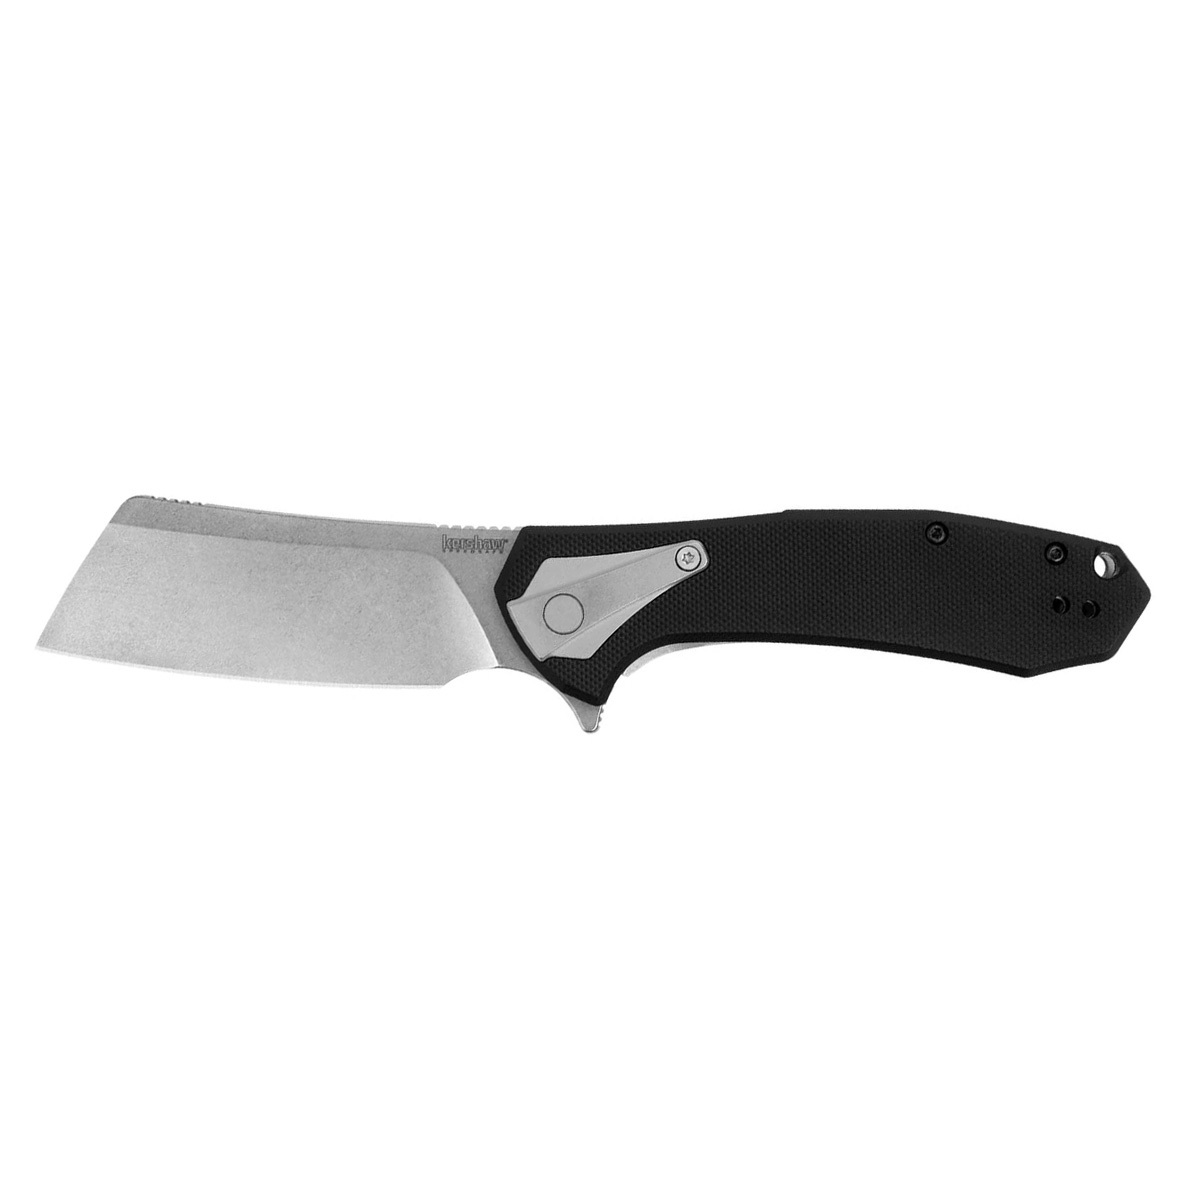 Полуавтоматический складной нож Kershaw Bracket, сталь 8Cr13MoV, рукоять нержавеющая сталь